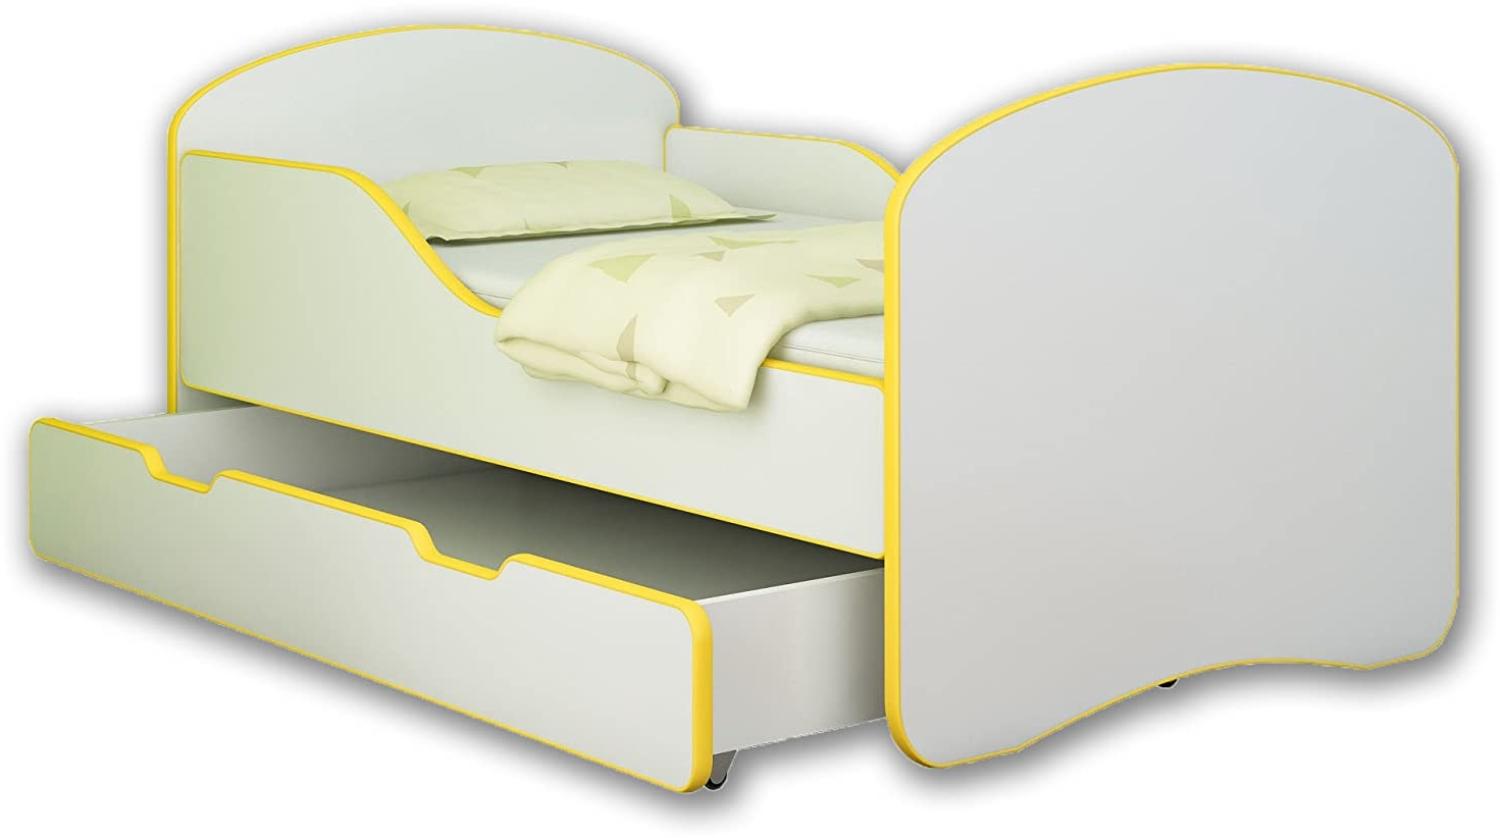 ACMA Jugendbett Kinderbett mit Einer Schublade und Matratze Weiß I 140 160 180 (160x80 cm + Drawer, Gelb) Bild 1